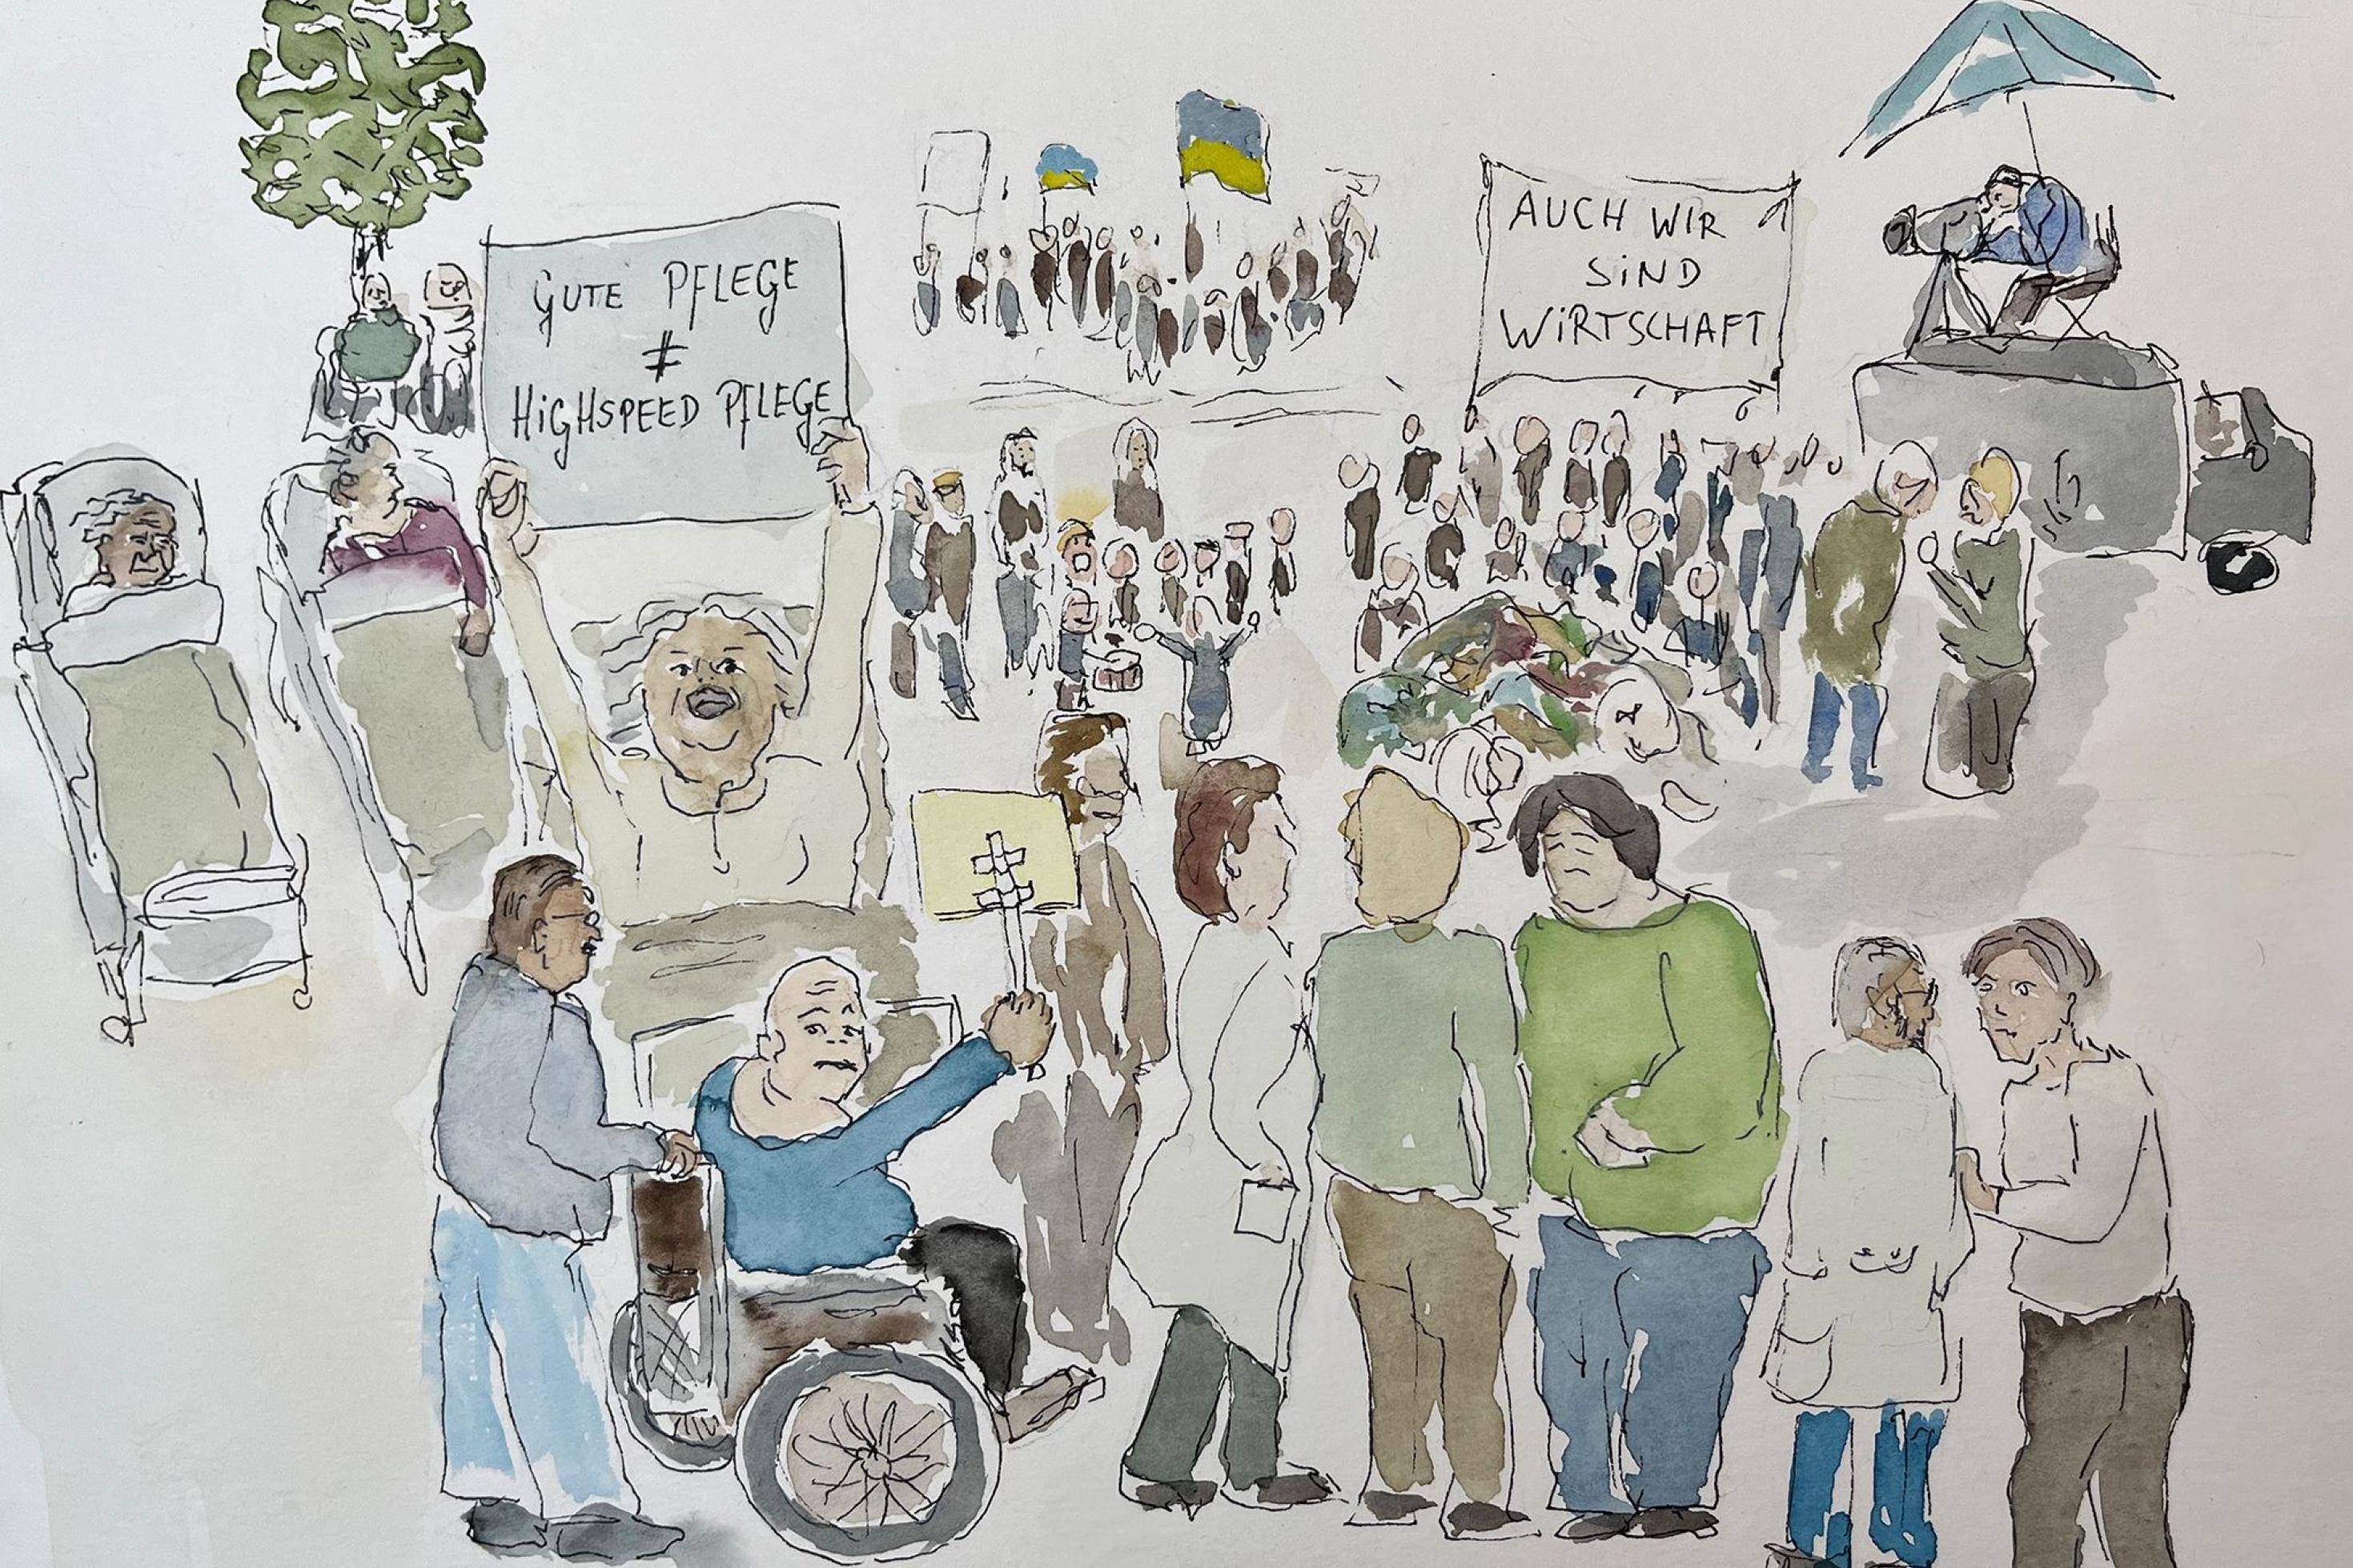 Die Grafik zeigt Menschen auf einer Demonstration zur Aufwertung sozialer Berufen. Es nehmen Menschen im Rollstuhl und in Krankenbetten teil, Kinder machen Musik, auf einem Banner steht „Auch wir sind Wirtschaft“.